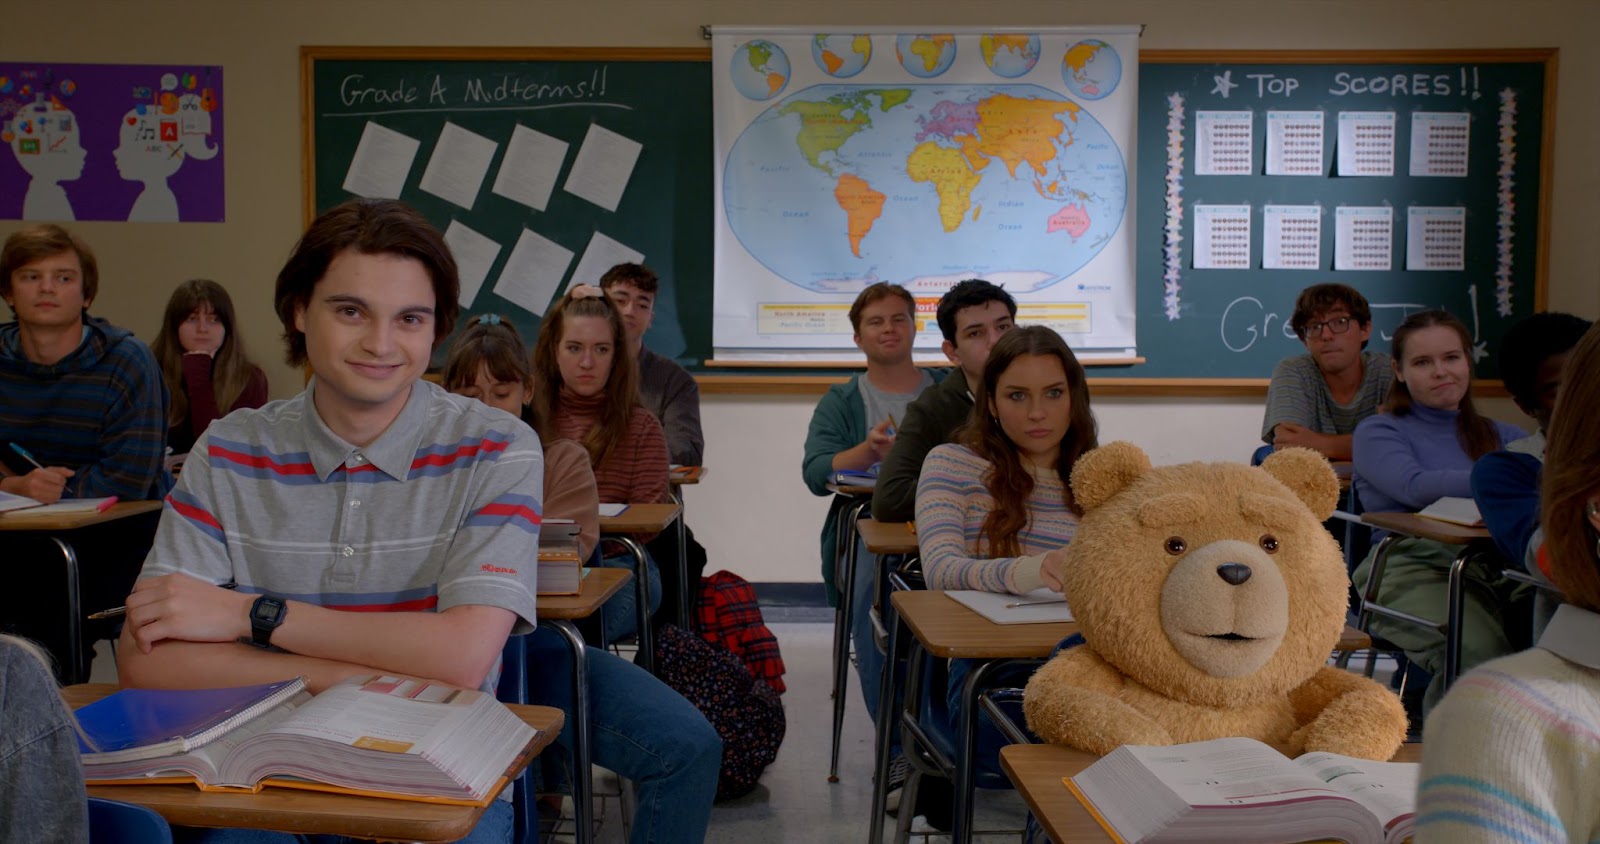 John Bennett y el oso Ted sentados en una sala de clases